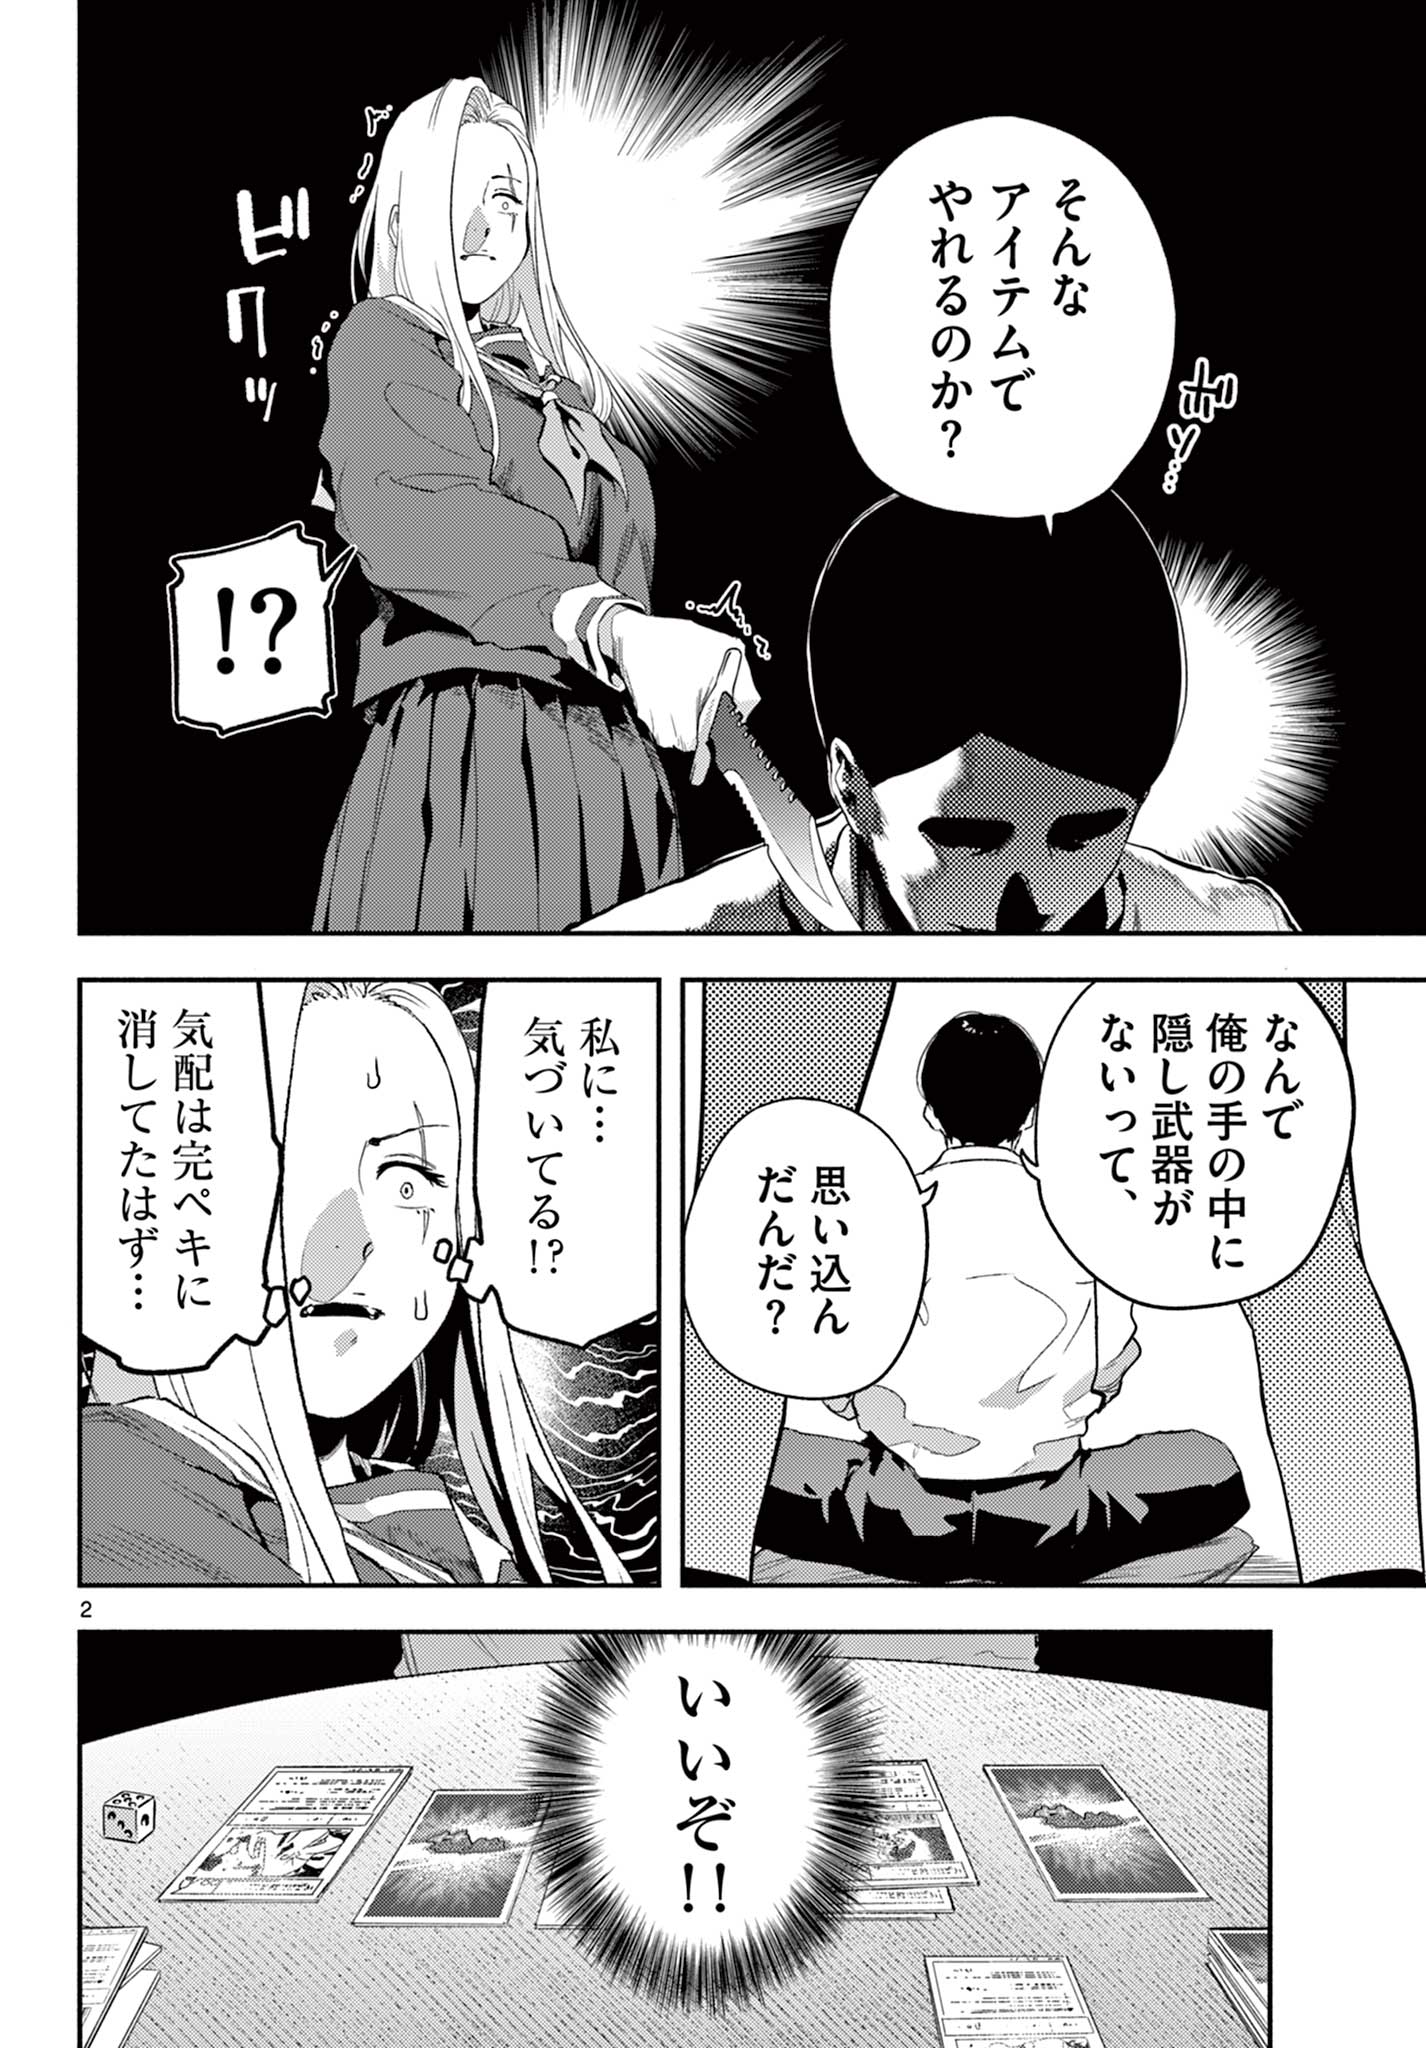 Killniru – Sensei ga Koroshiya tte Hontou desu ka? - Chapter 4 - Page 2